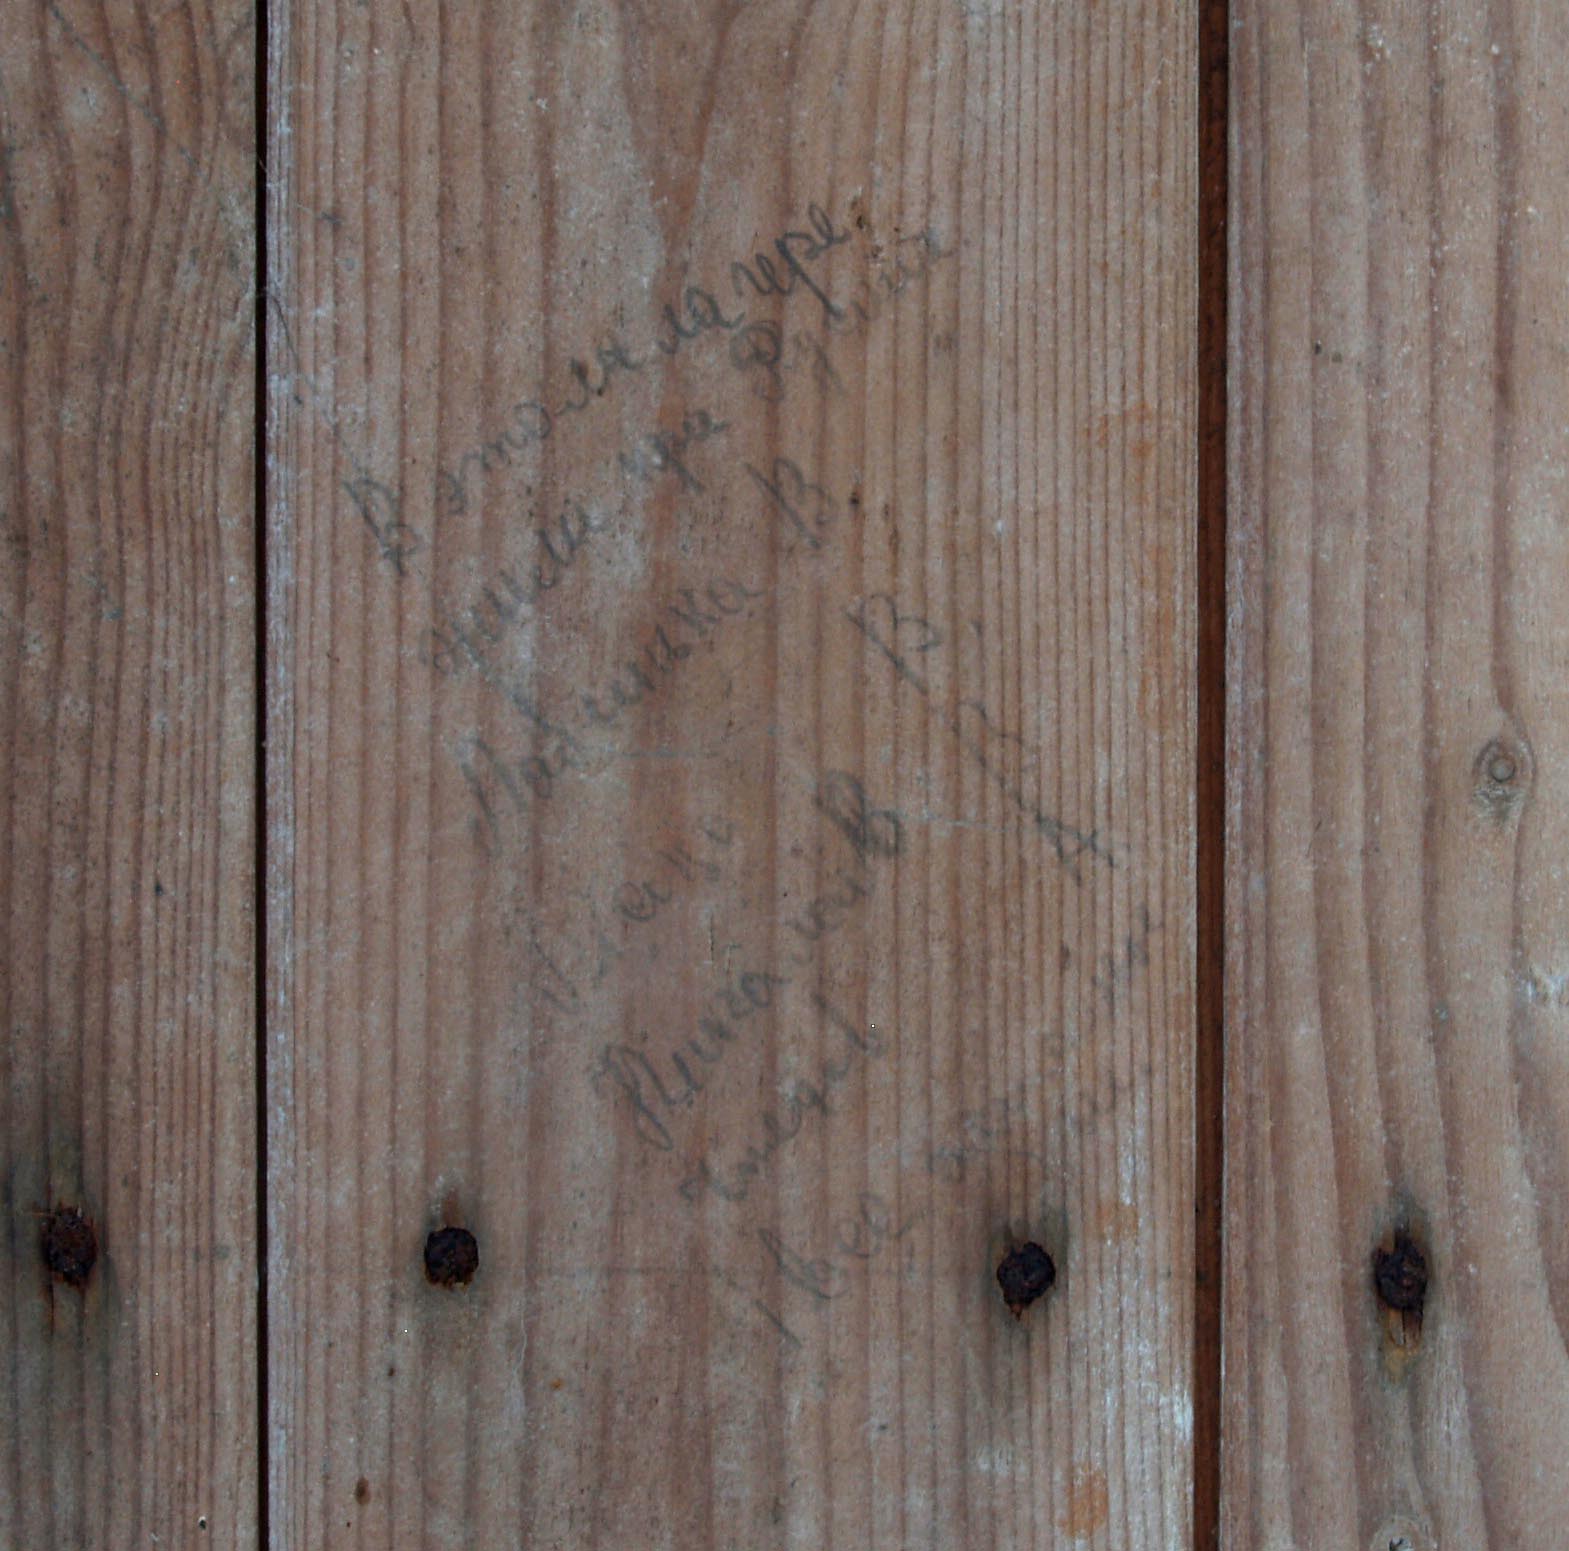 Eine kyrillische Inschrift auf einem Brett der Baracke